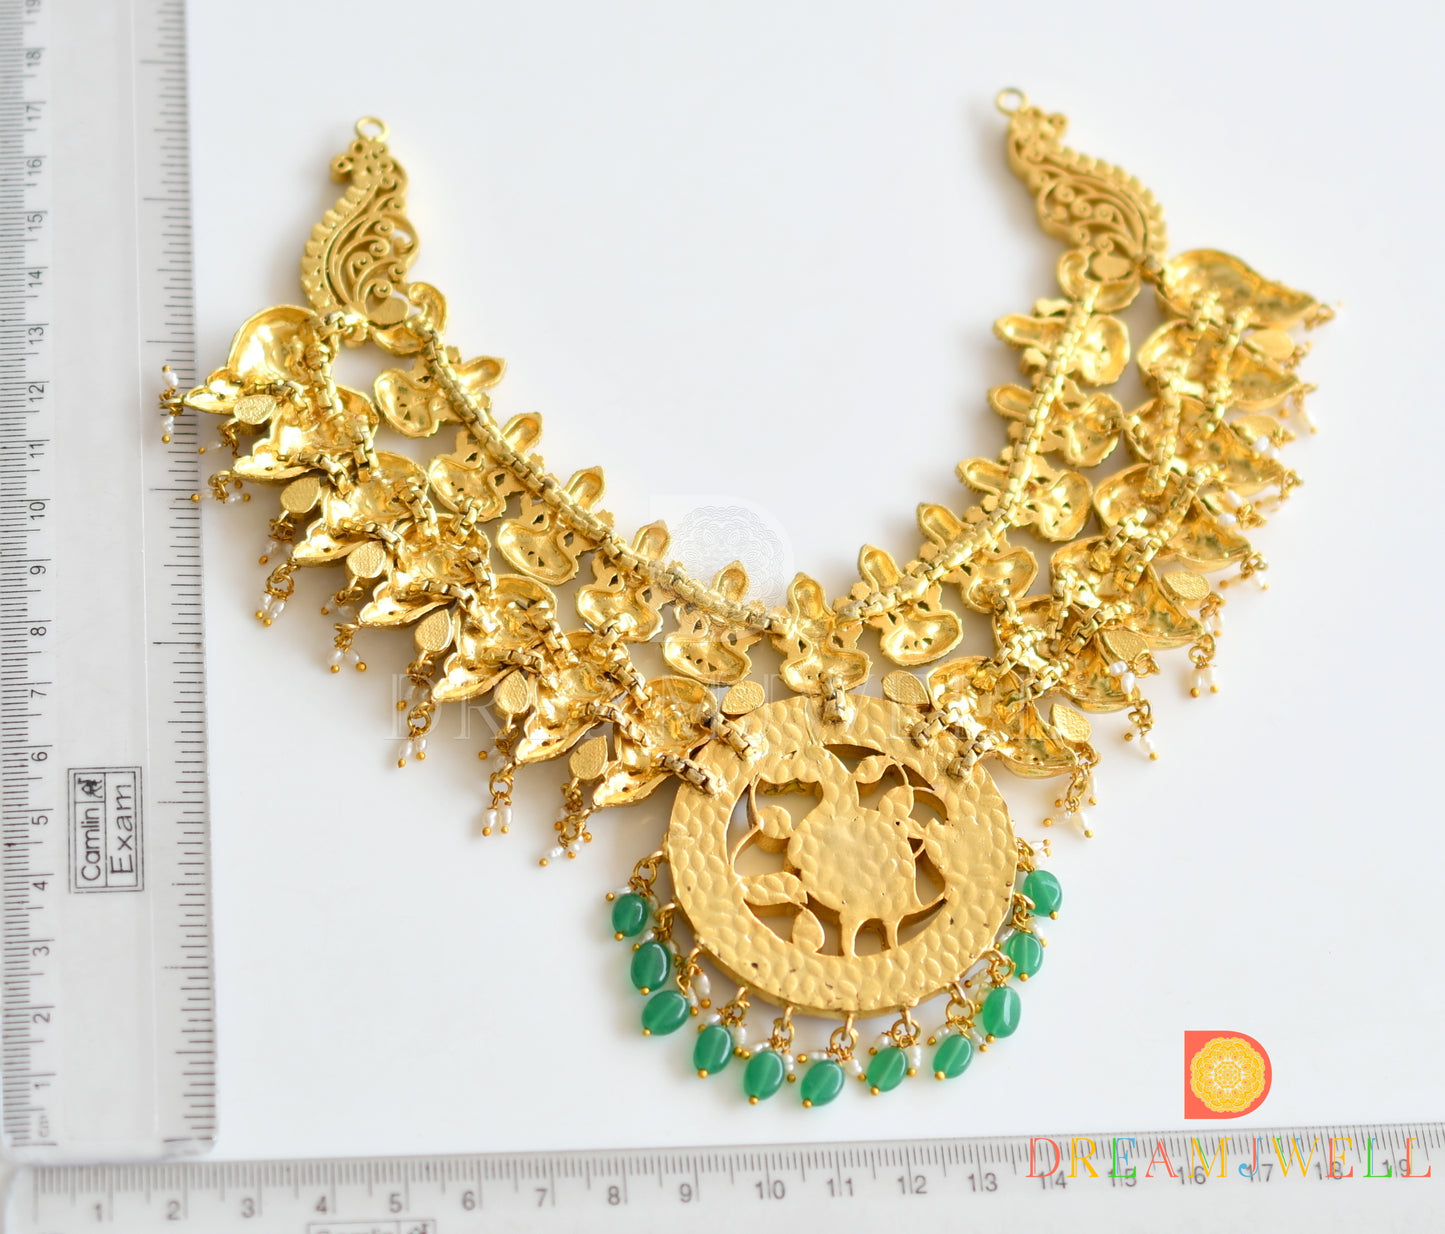 Antique Kundan Jadau Lakshmi-Peacock Designer Necklace Set dj-33925